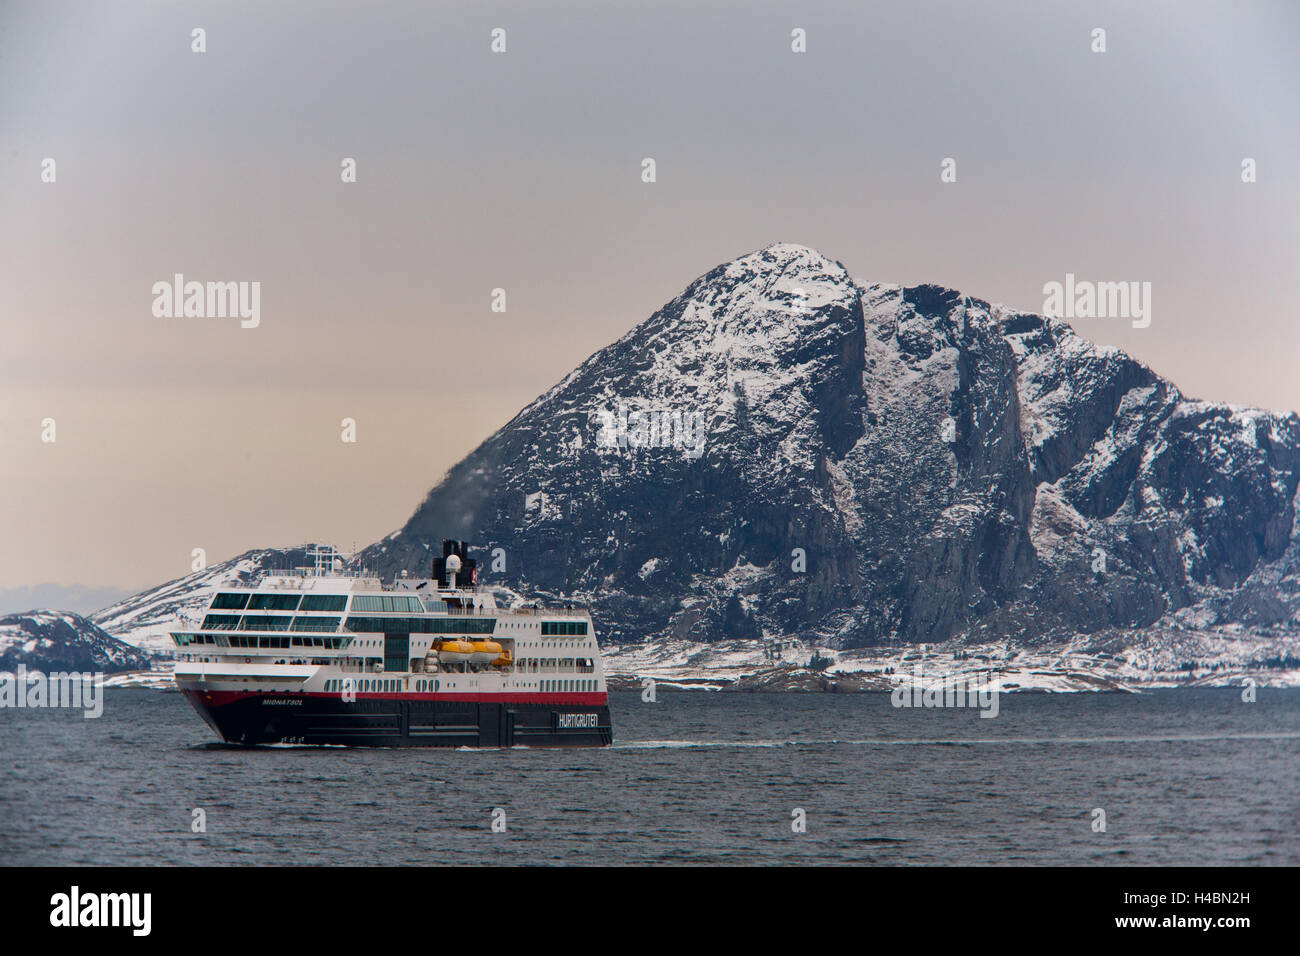 Hurtigruten MS Midnatsol, bateau, mer, montagnes, hivers, la neige, l'Arctique, le nord du pays, le nord de la Norvège, la Norvège Banque D'Images